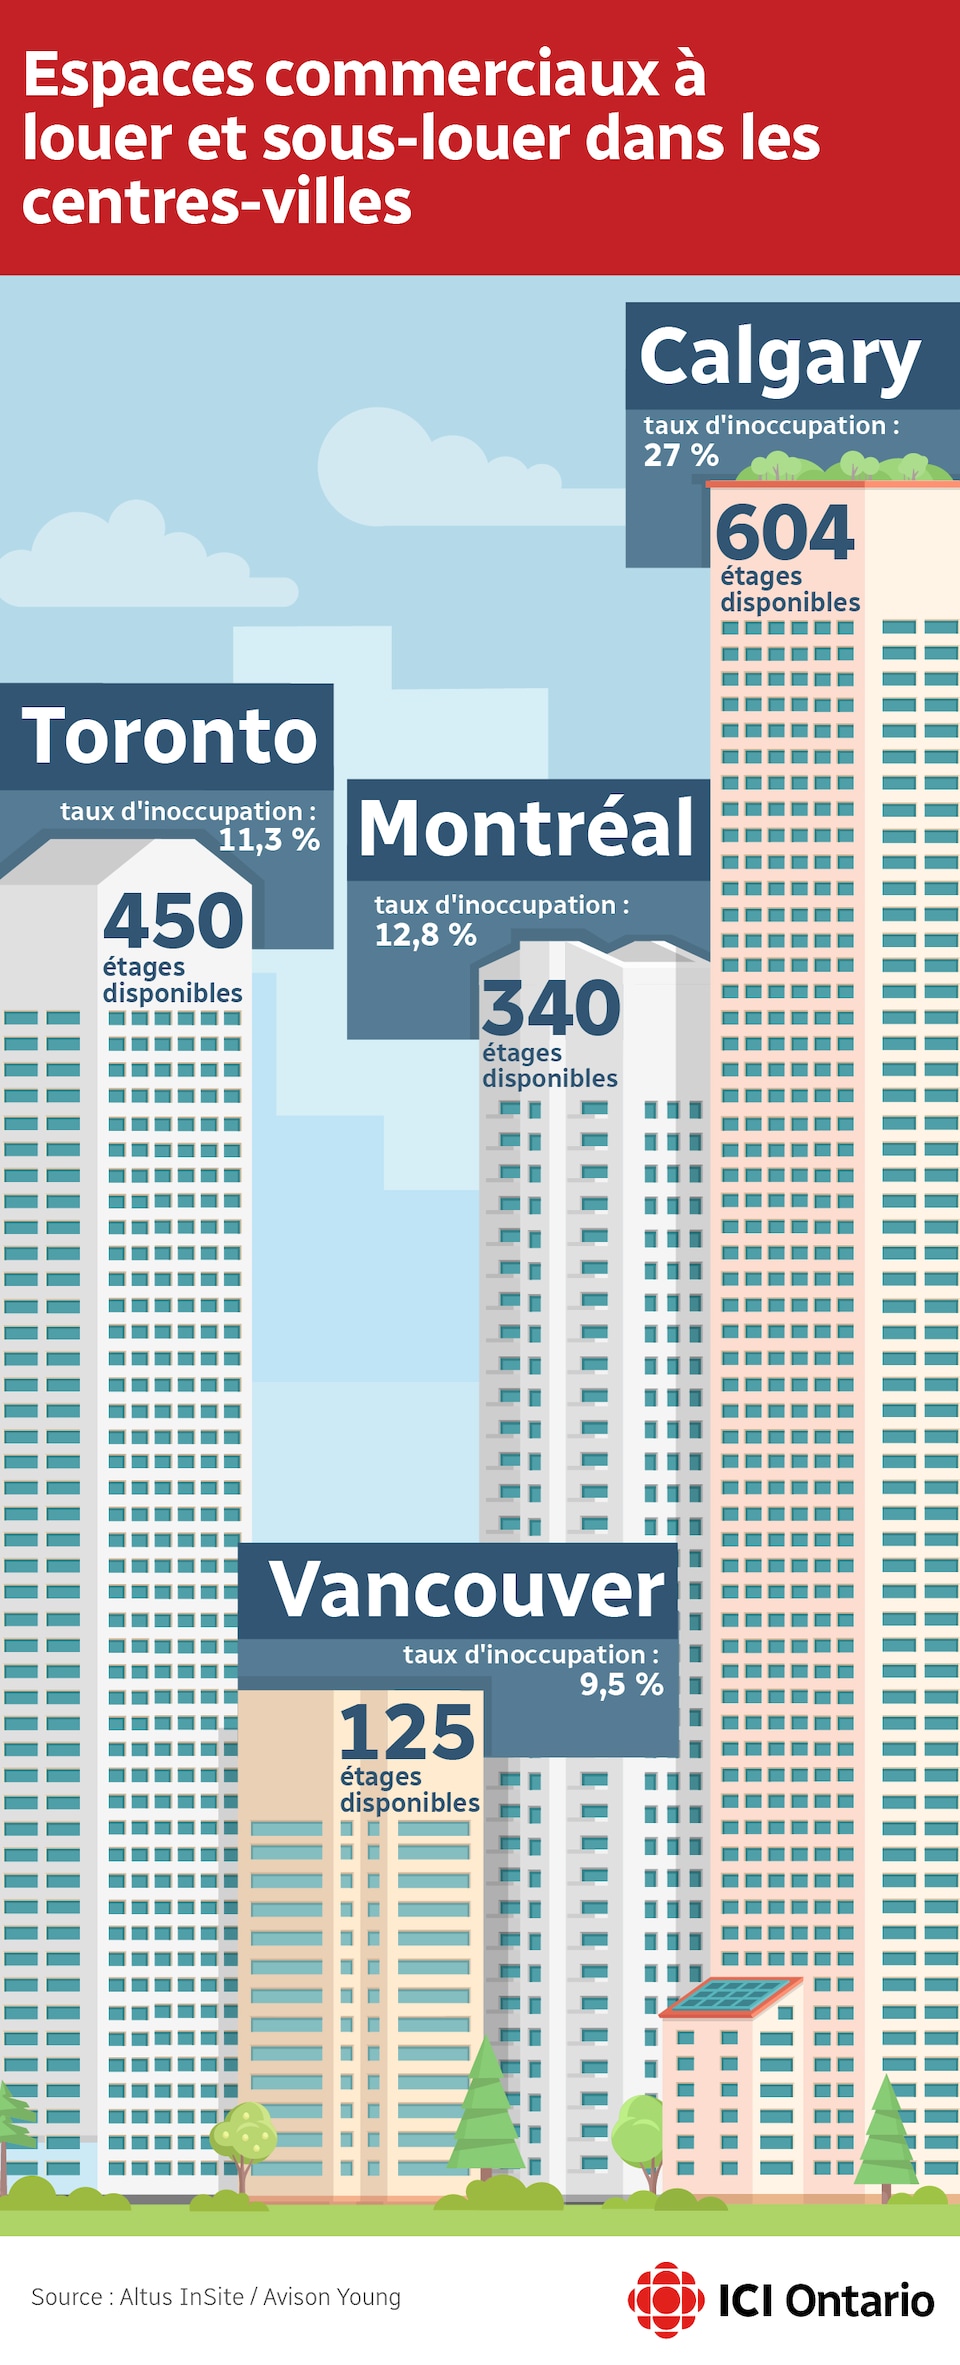 L'infographie indique le nombre d'étages disponibles dans chaque ville : Toronto - 450, Vancouver - 125, Montréal - 340 et Calgary - 604.